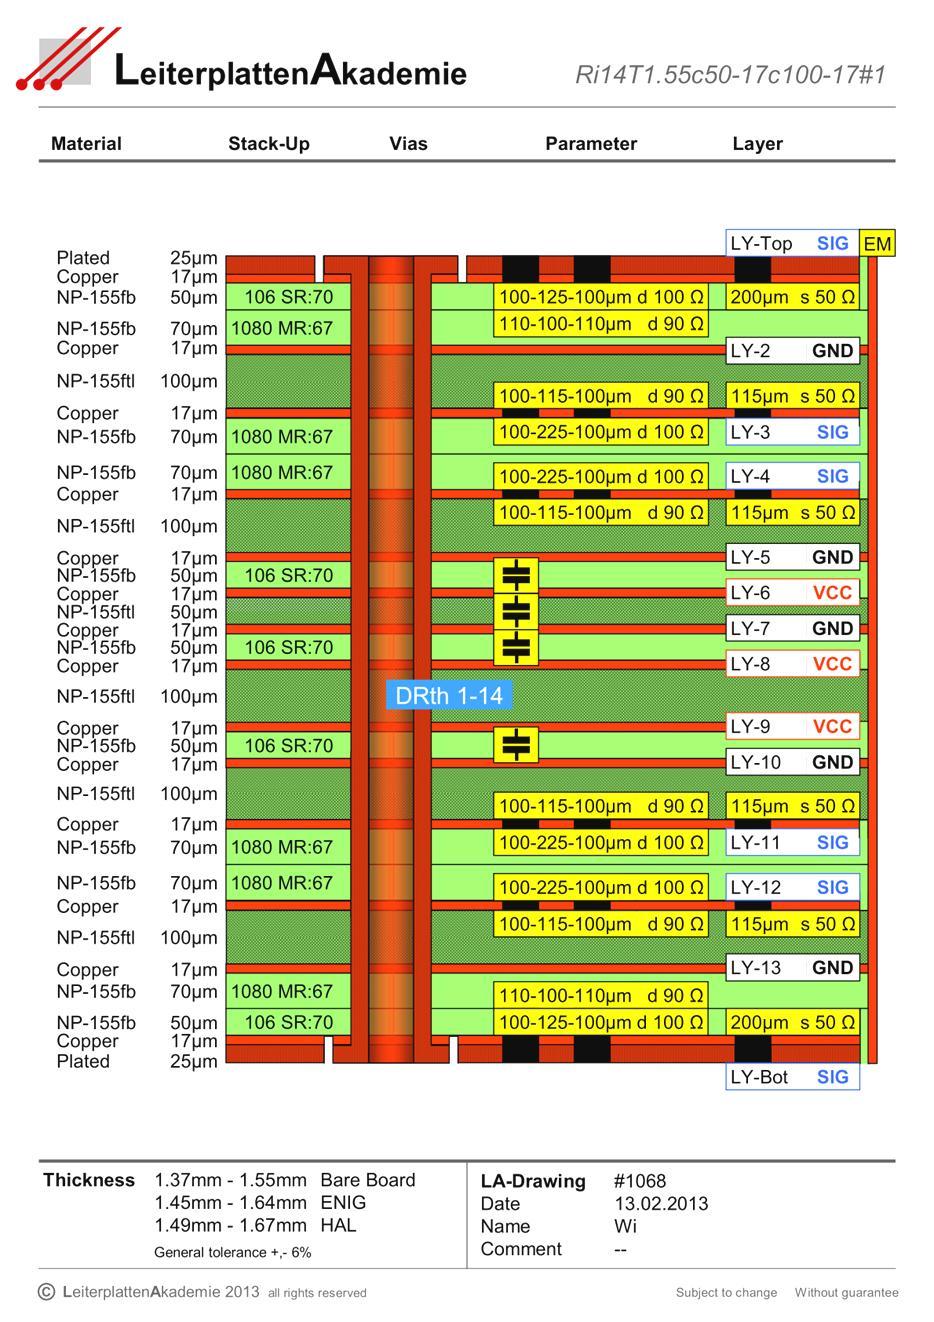 BGA Routing : Multilayer für eine Matrix 25x25 und 800µm Pitch Lagenaufbau Für ein BGA mit einer voll belegten Matrix von 25x25 Spalten und Reihen sind maximal 6 Signallayer für das Routing